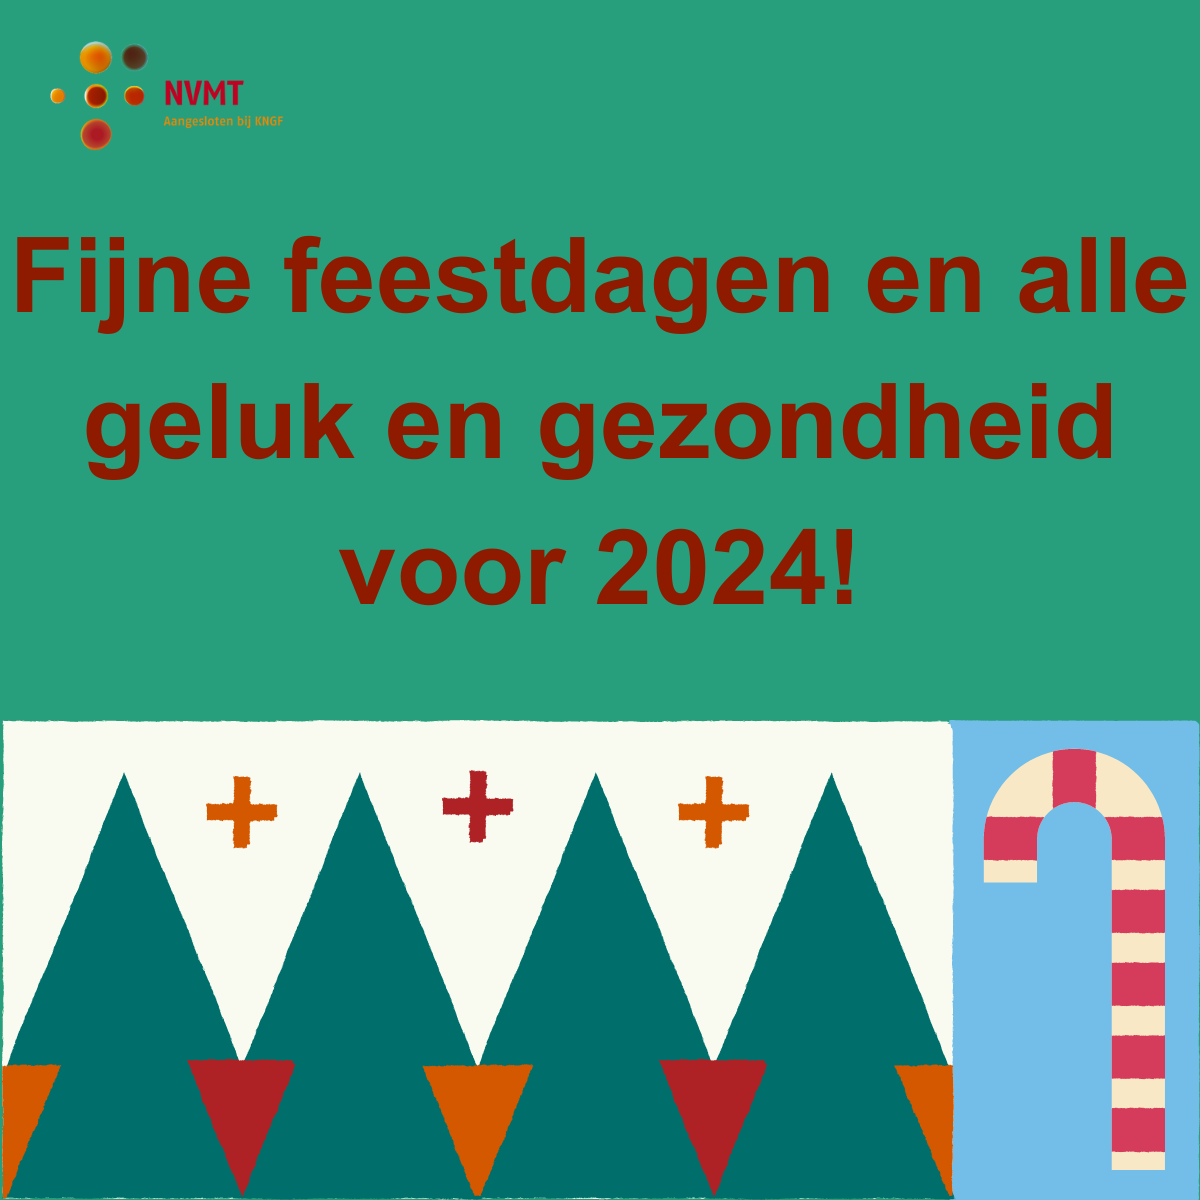 fijne-feestdagen-en-alle-geluk-en-gezondheid-gewenst-voor-2024.png